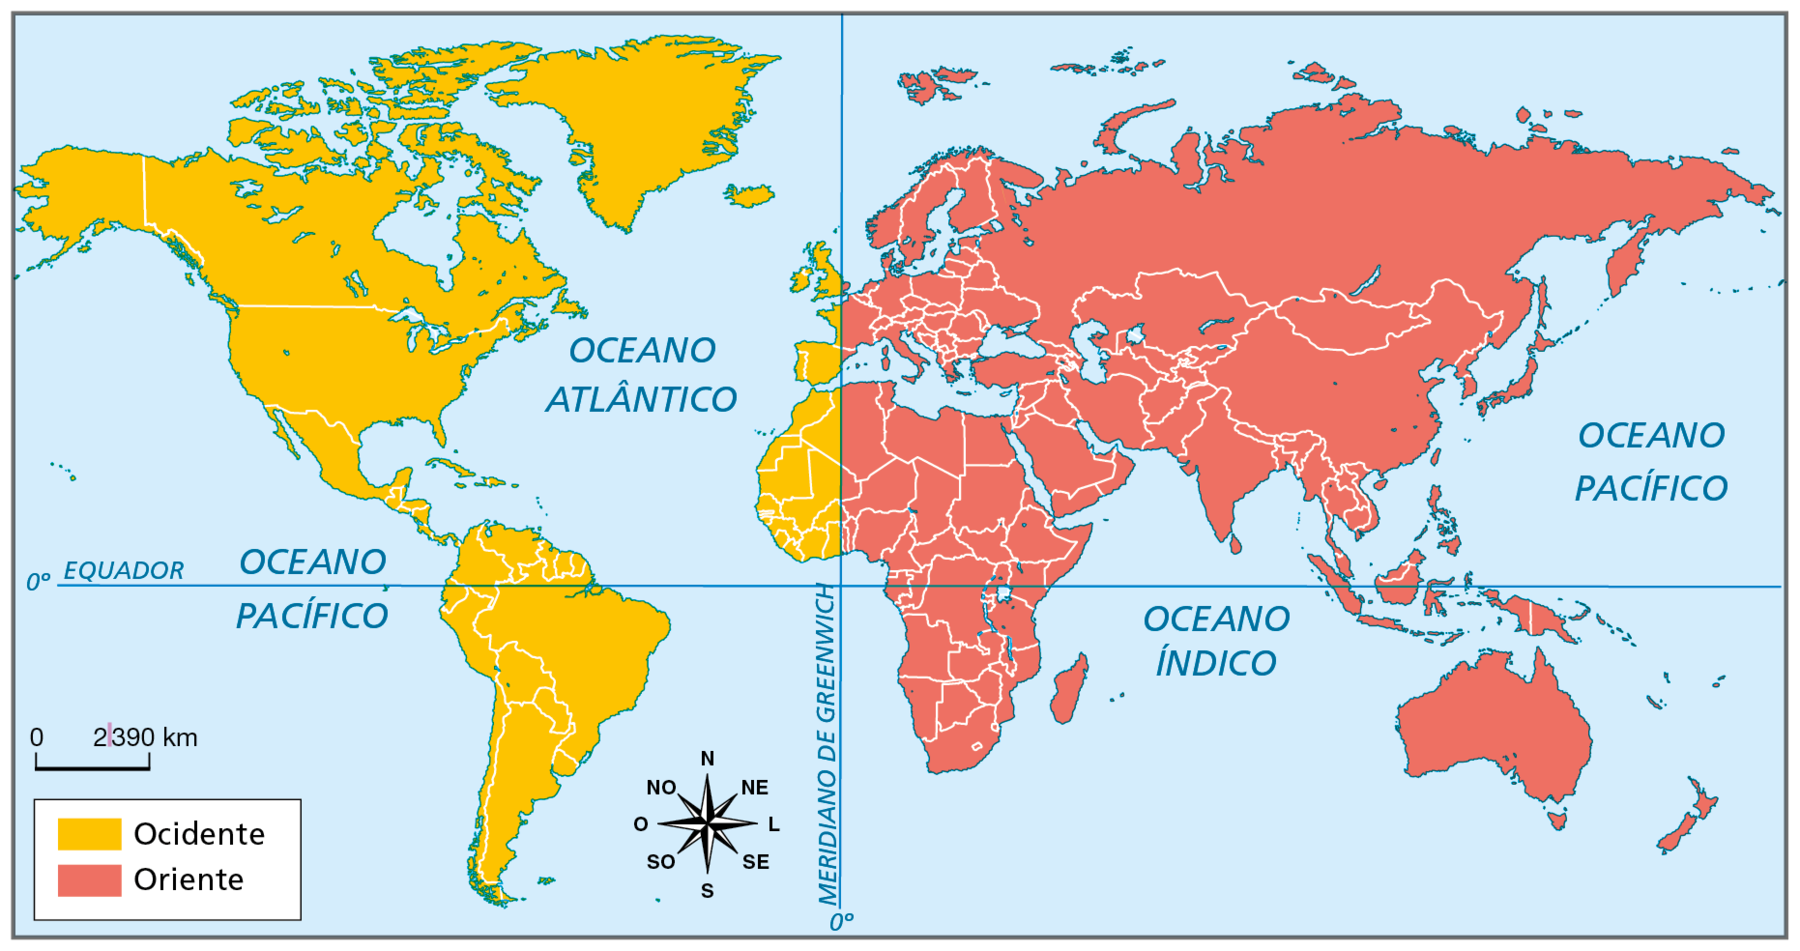 Mapa. Planisfério representando, por meio de cores, as terras da América, da África, da Europa, da Ásia e da Oceania situadas no Ocidente e as terras situadas no Oriente, em relação ao meridiano de Greenwich (zero grau). Ocidente: abrange terras do continente americano, parte oeste da África e a parte do extremo oeste da Europa, delimitada pelo meridiano de Greenwich. Oriente: terras da Ásia e da Oceania, a maior parte da África e da Europa. Na parte inferior do mapa, escala de 0 a 2.390 quilômetros e a rosa dos ventos.